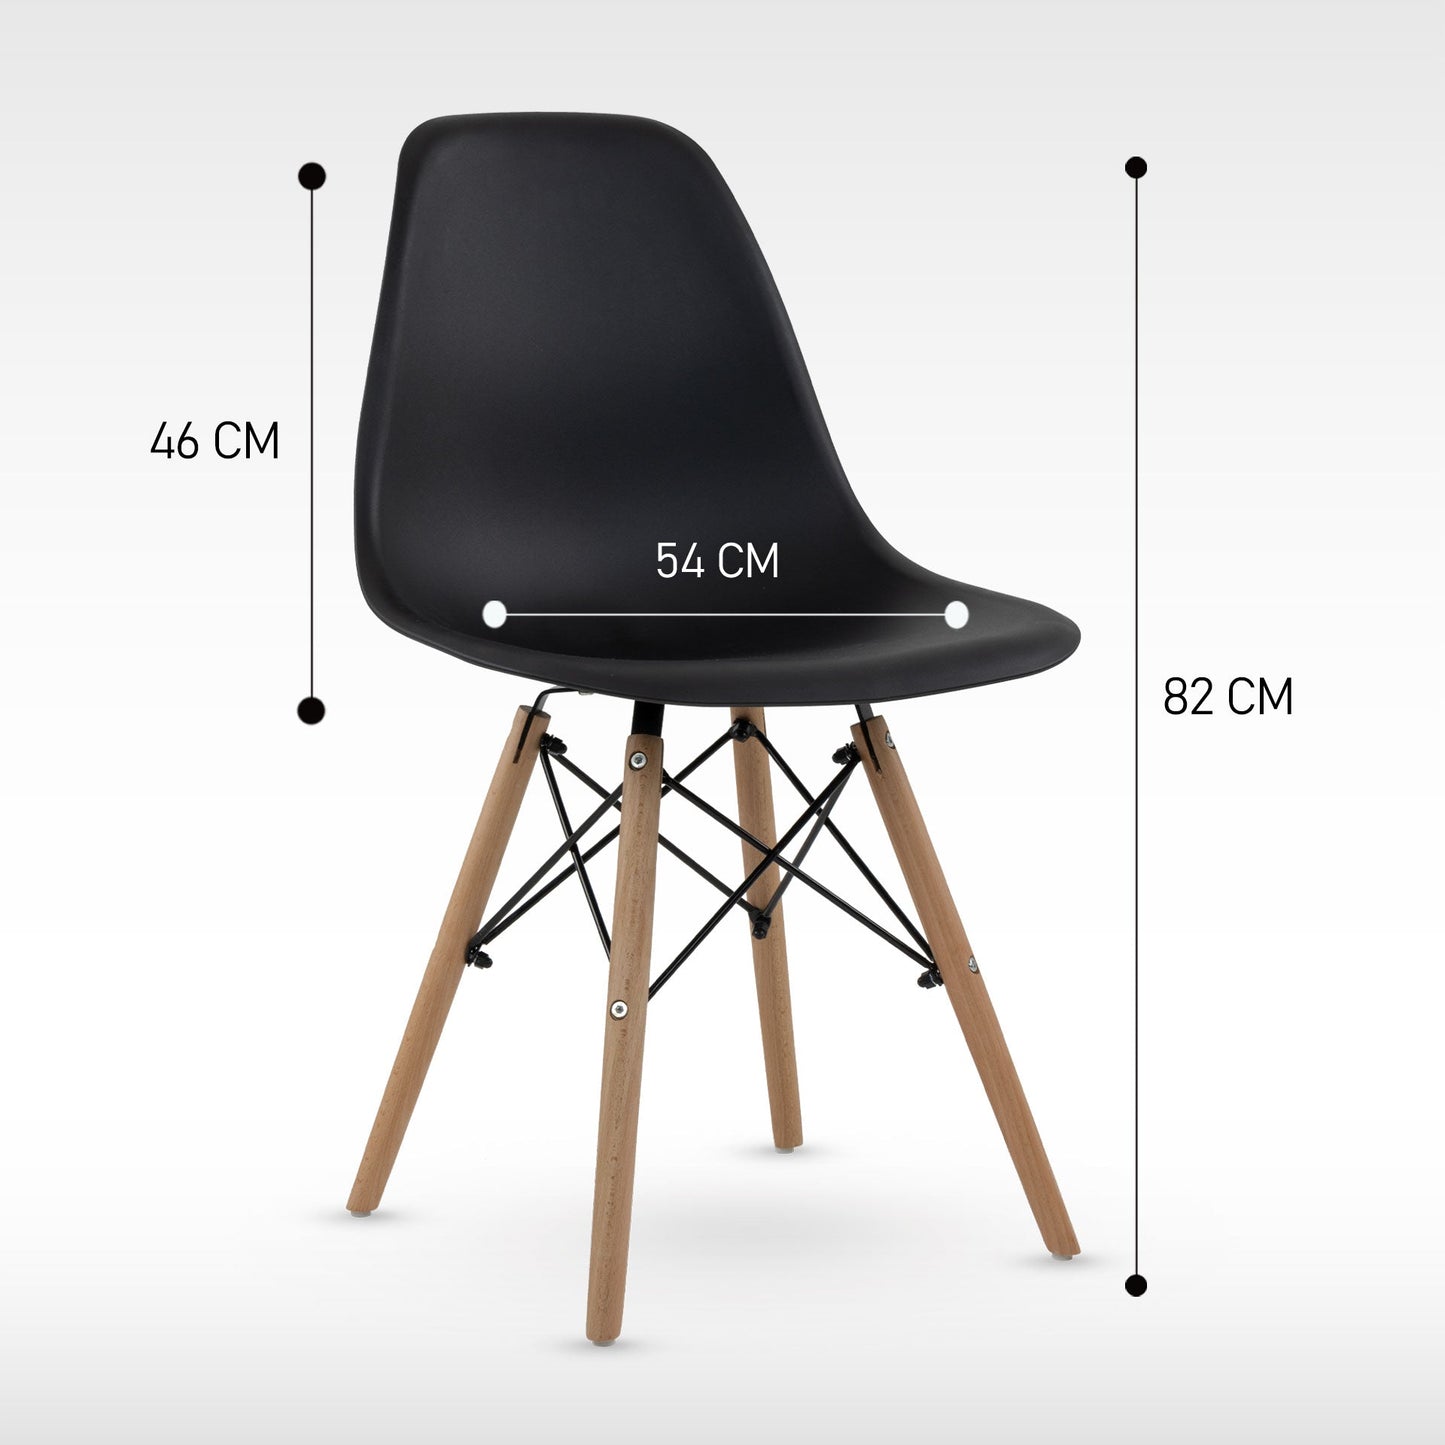 Silla Mirel Shell Minimalista para Comedor e interiores del Hogar- Diseño moderno y ergonómico Set 4